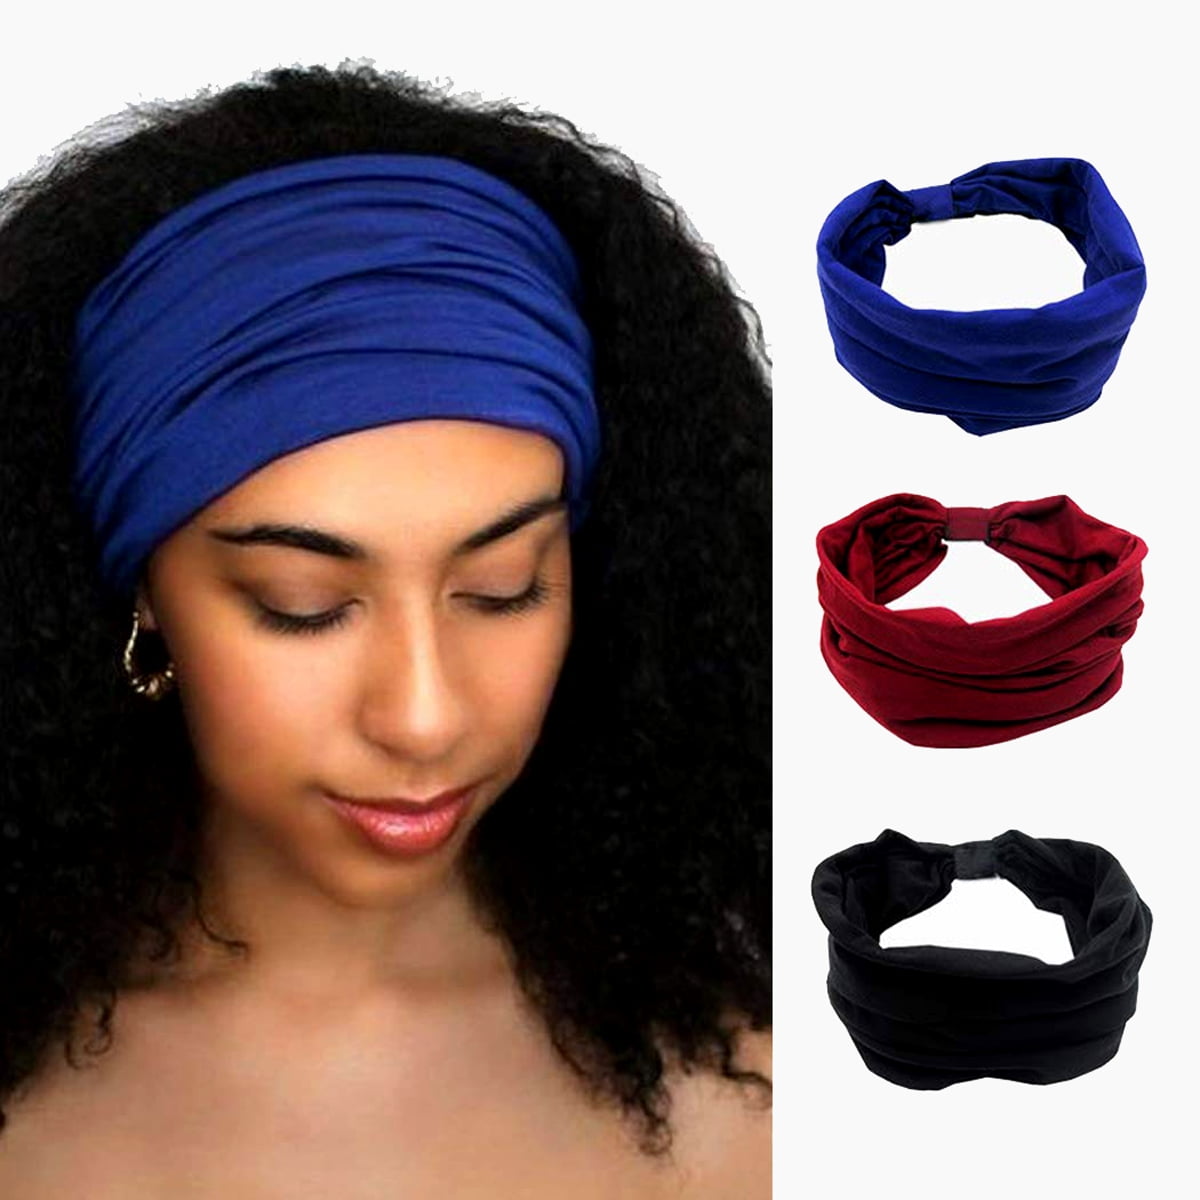 hairband Hair headband wax headband African cotton headband African collection headband